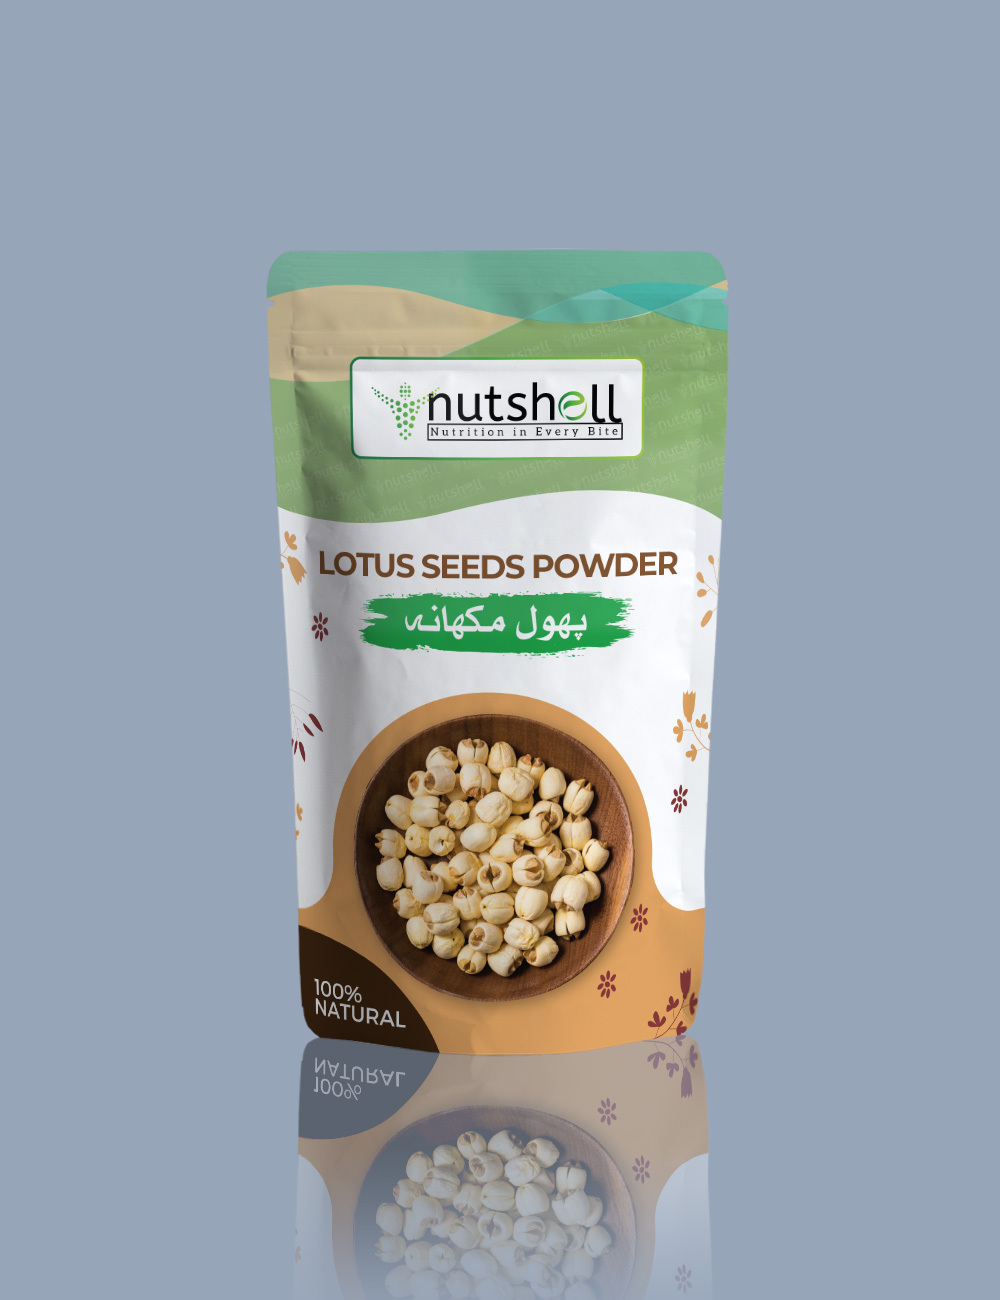 Lotus seeds powder